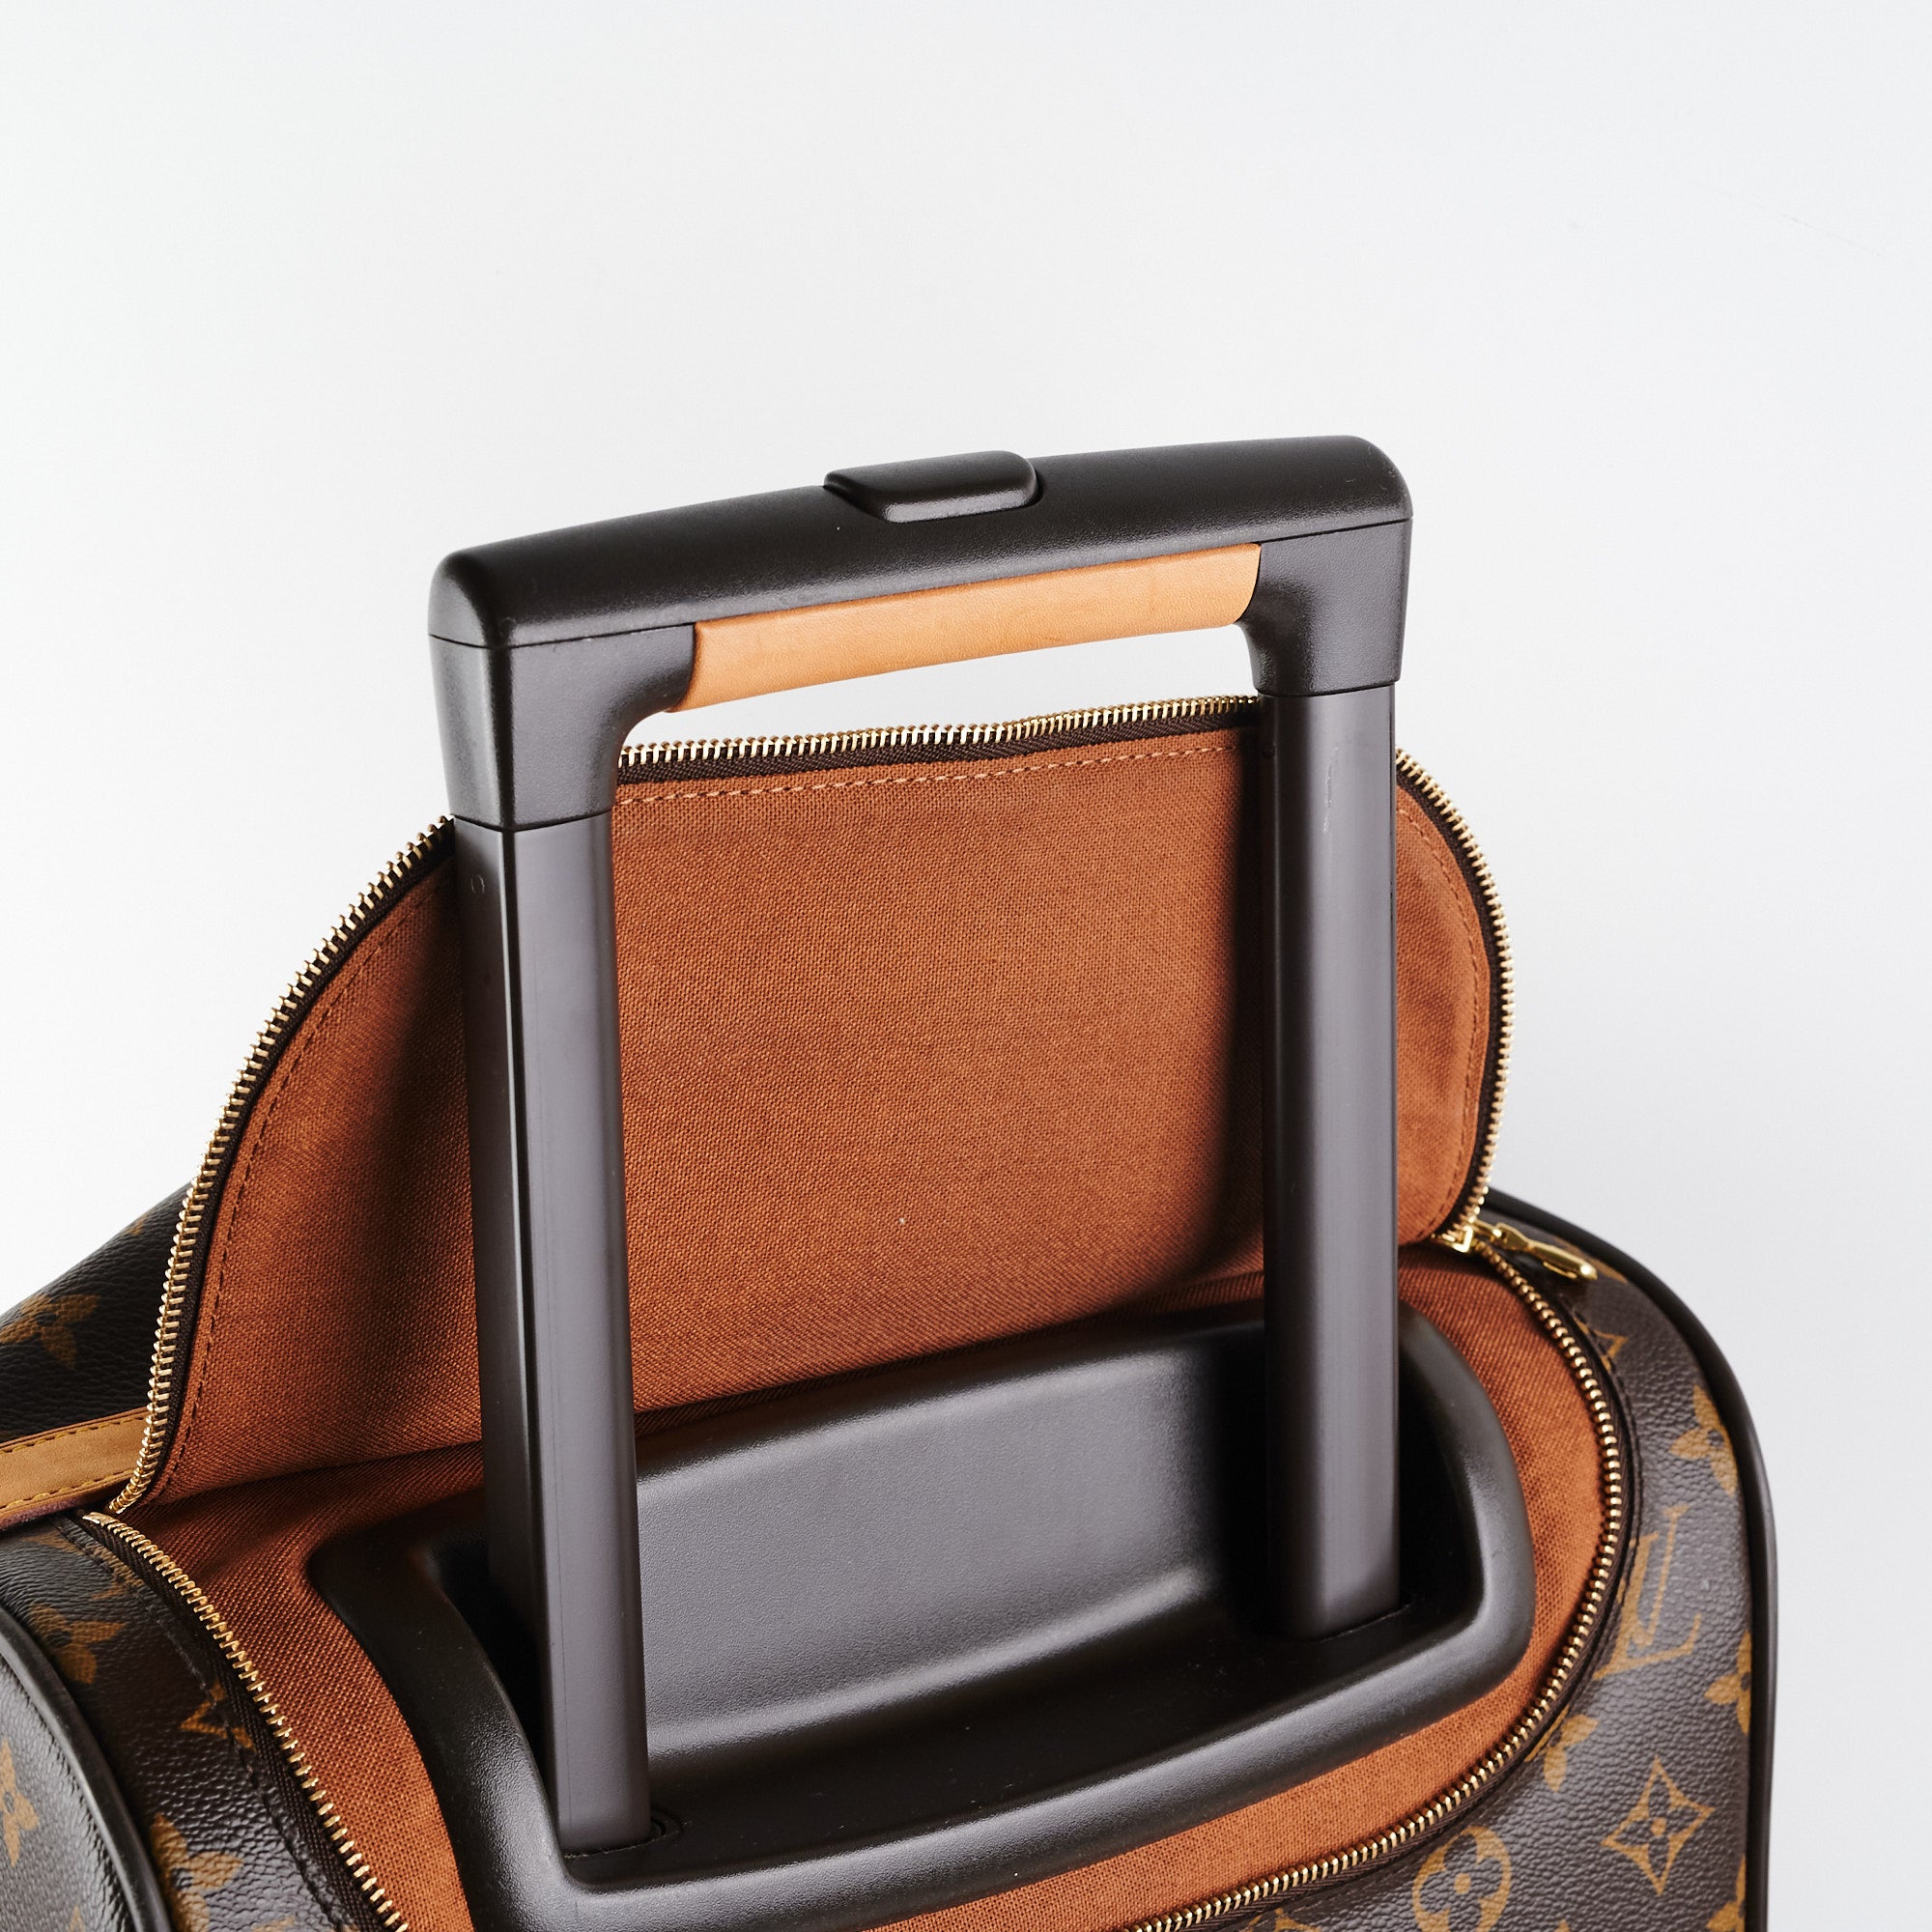 Louis Vuitton Eole Travel bag 389611